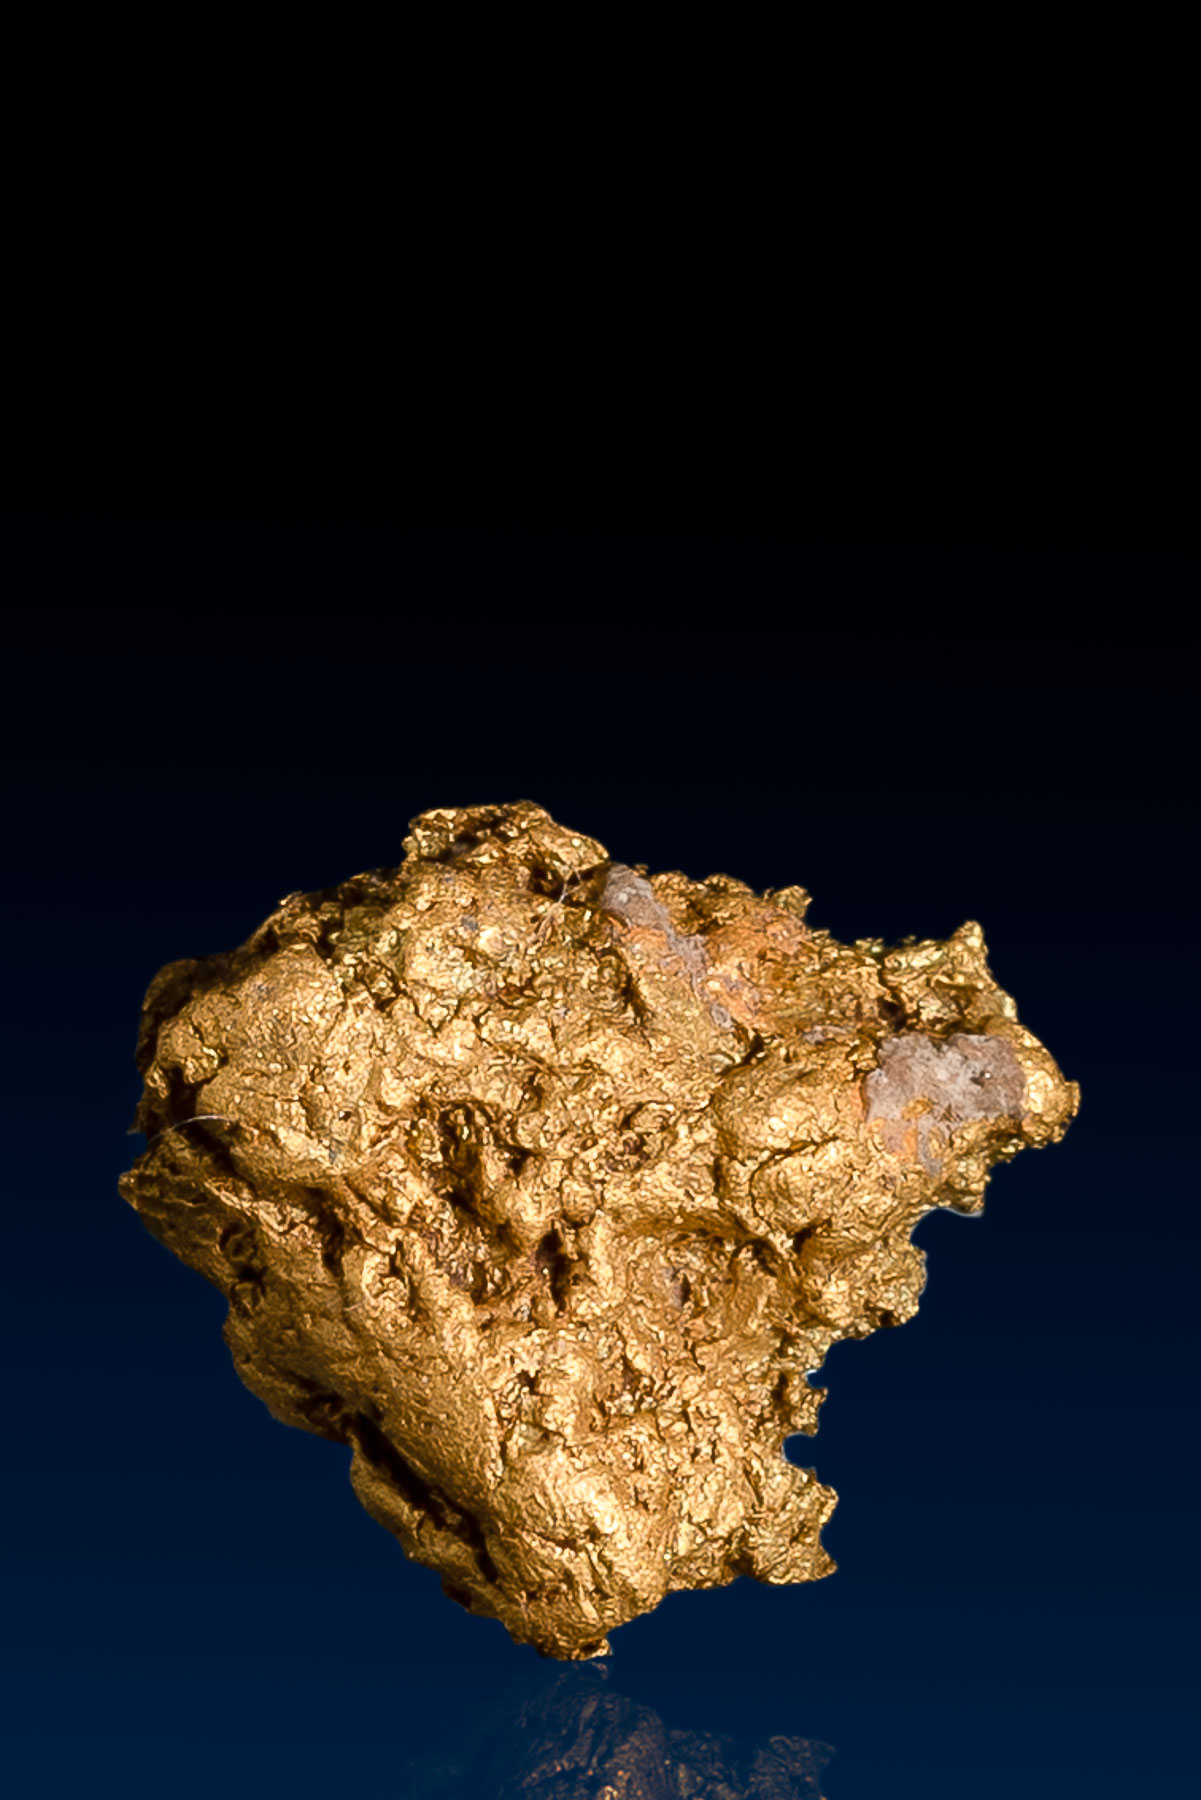 Triangle Shaped Arizona Natural Gold Nugget - 2.38 grams